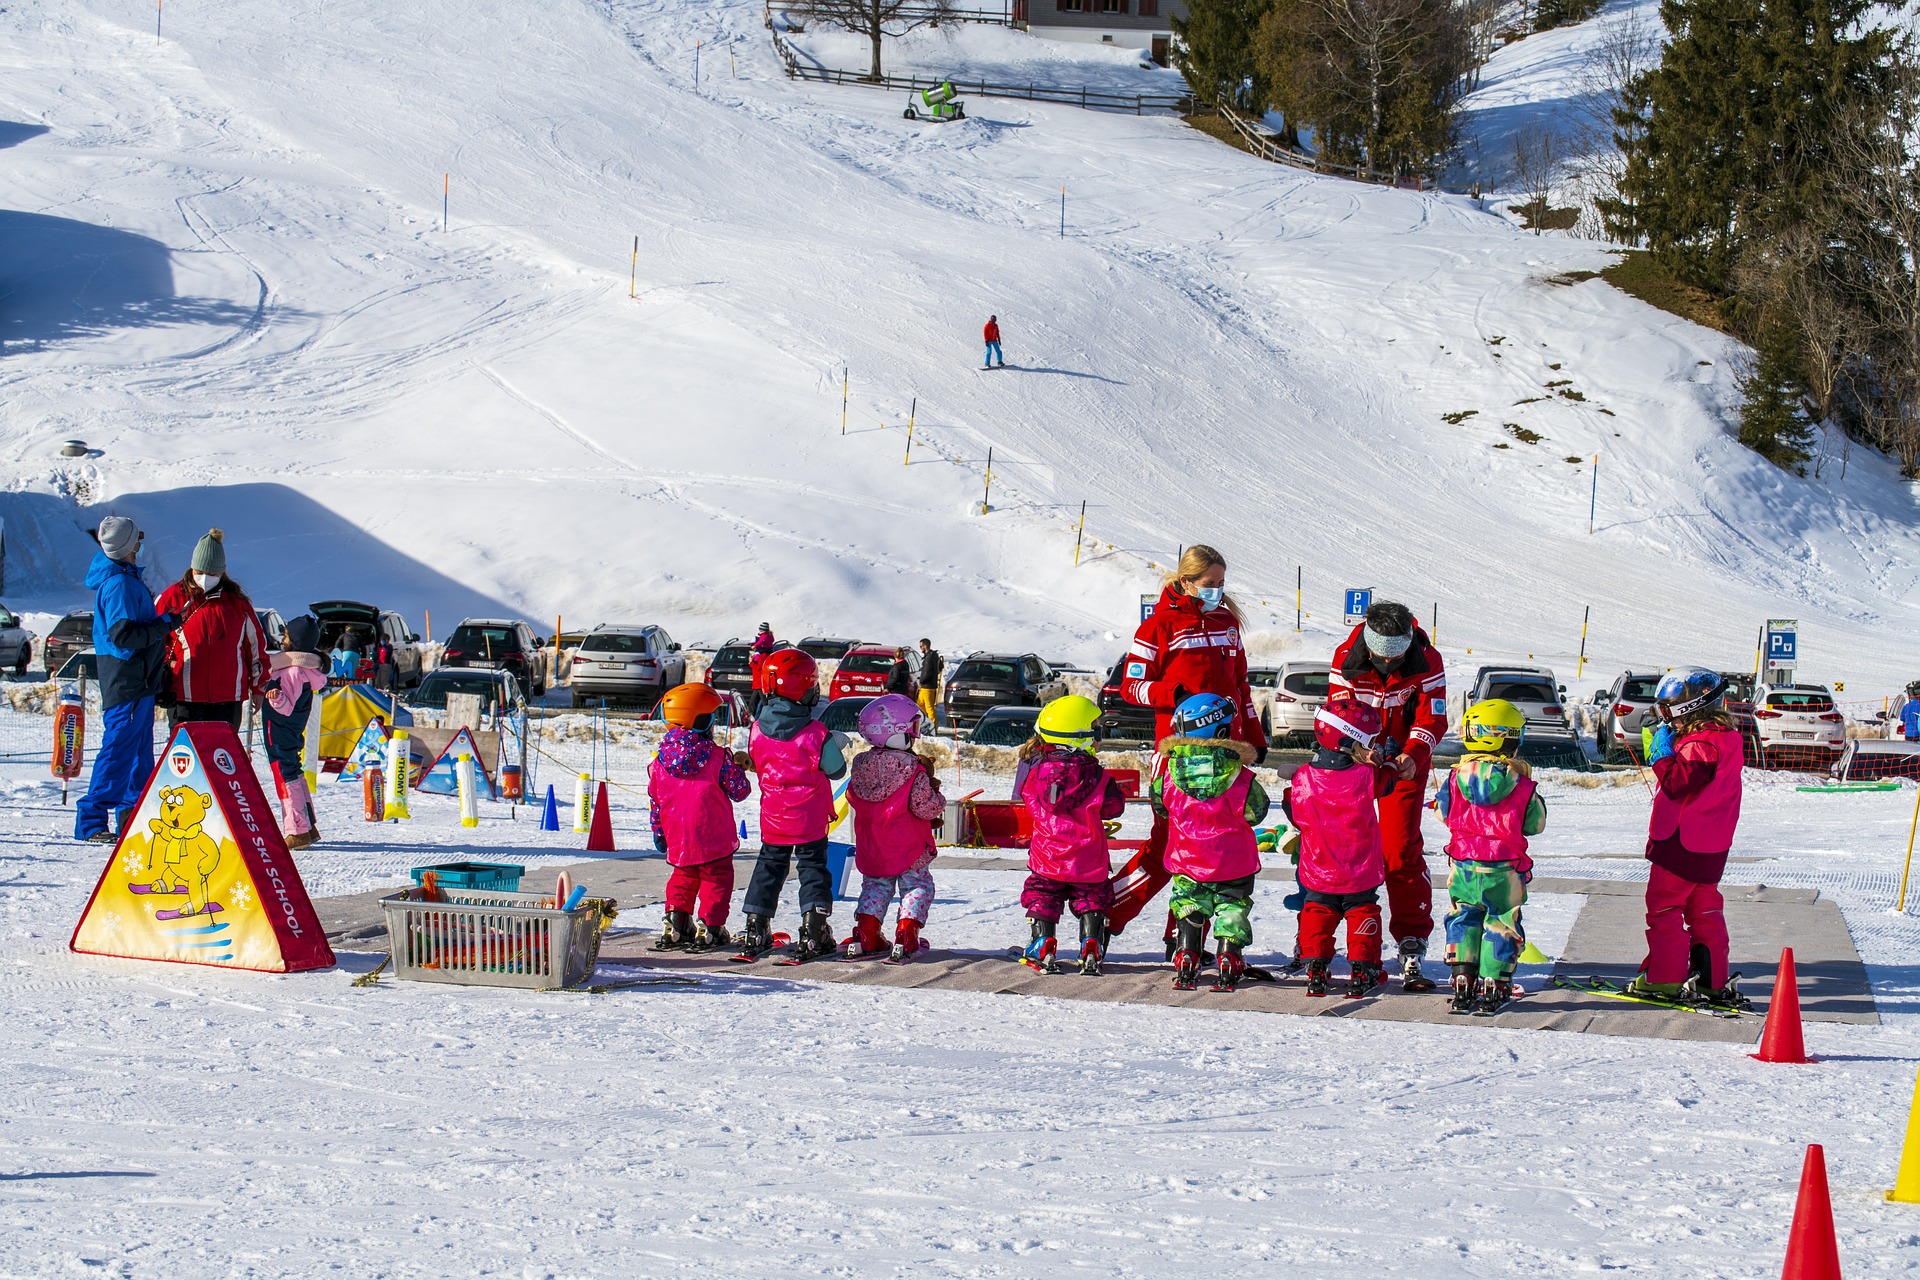 Corso di sci per bambini: i consigli per i genitori